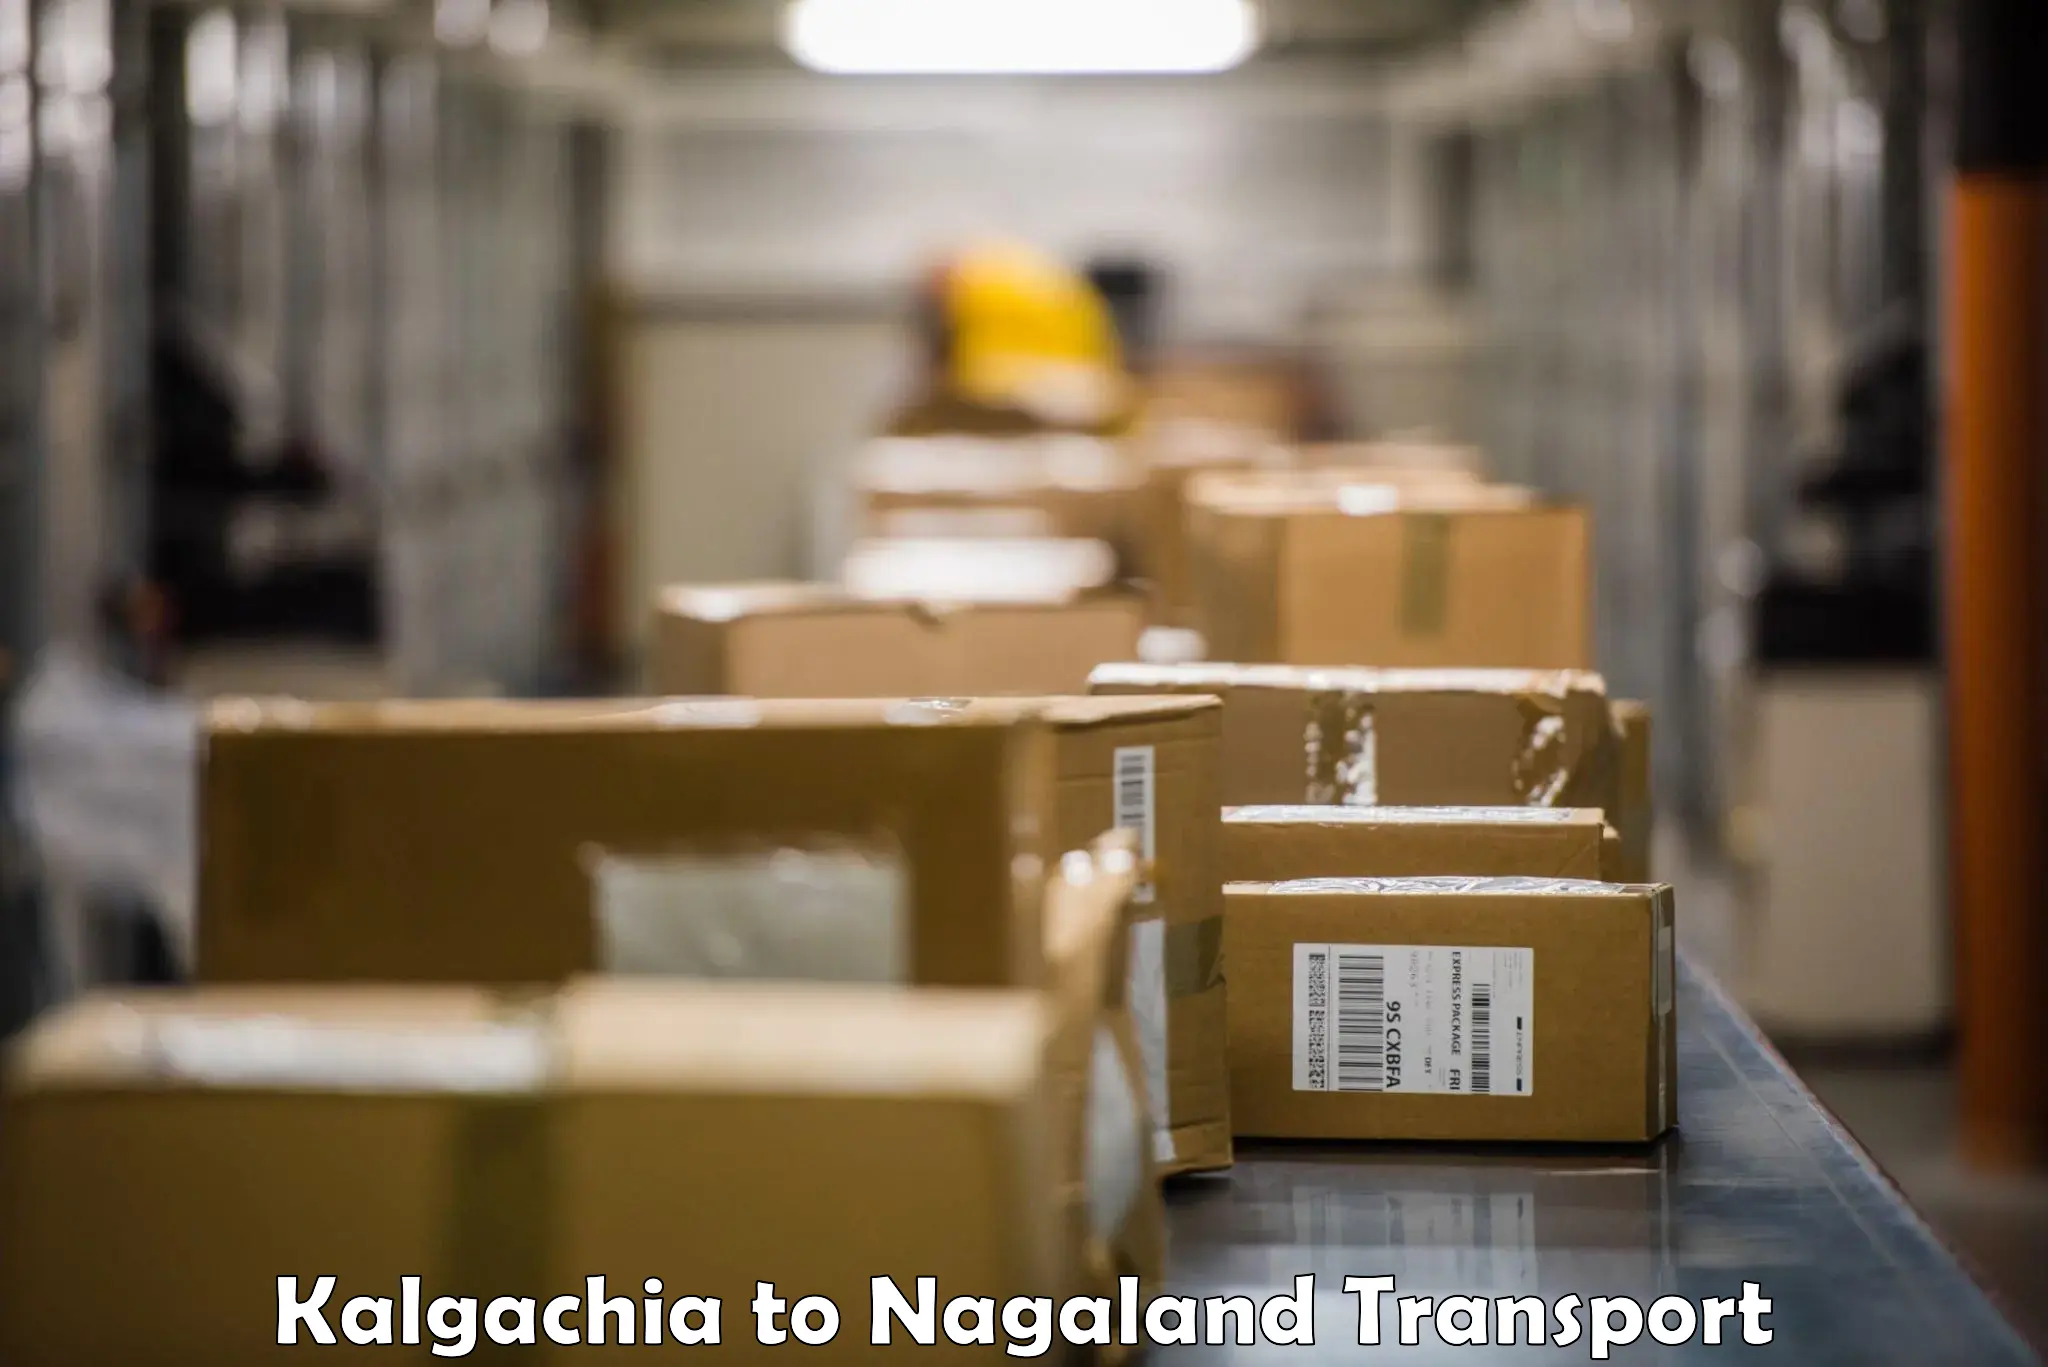 Air freight transport services in Kalgachia to Nagaland